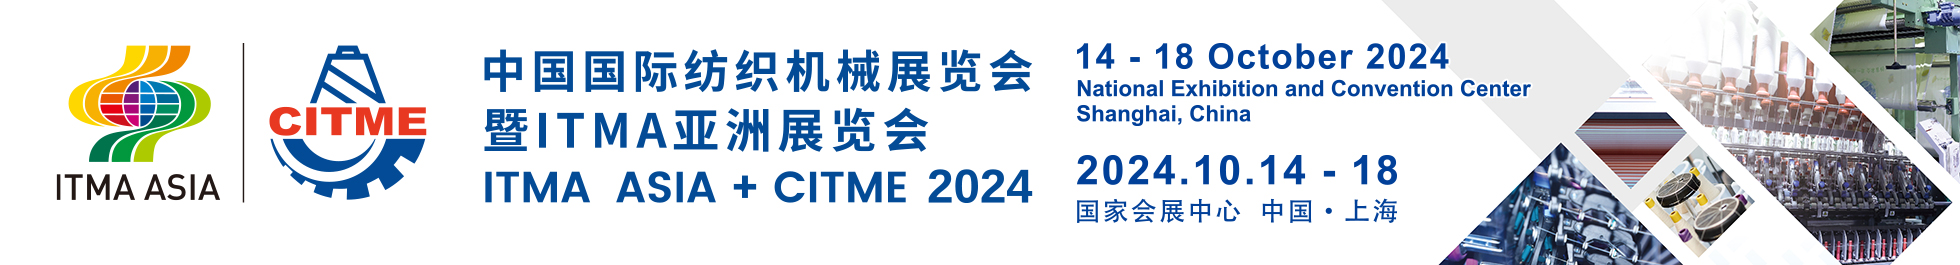 2024中国国际纺织机械展览会暨ITMA亚洲展览会信息验证